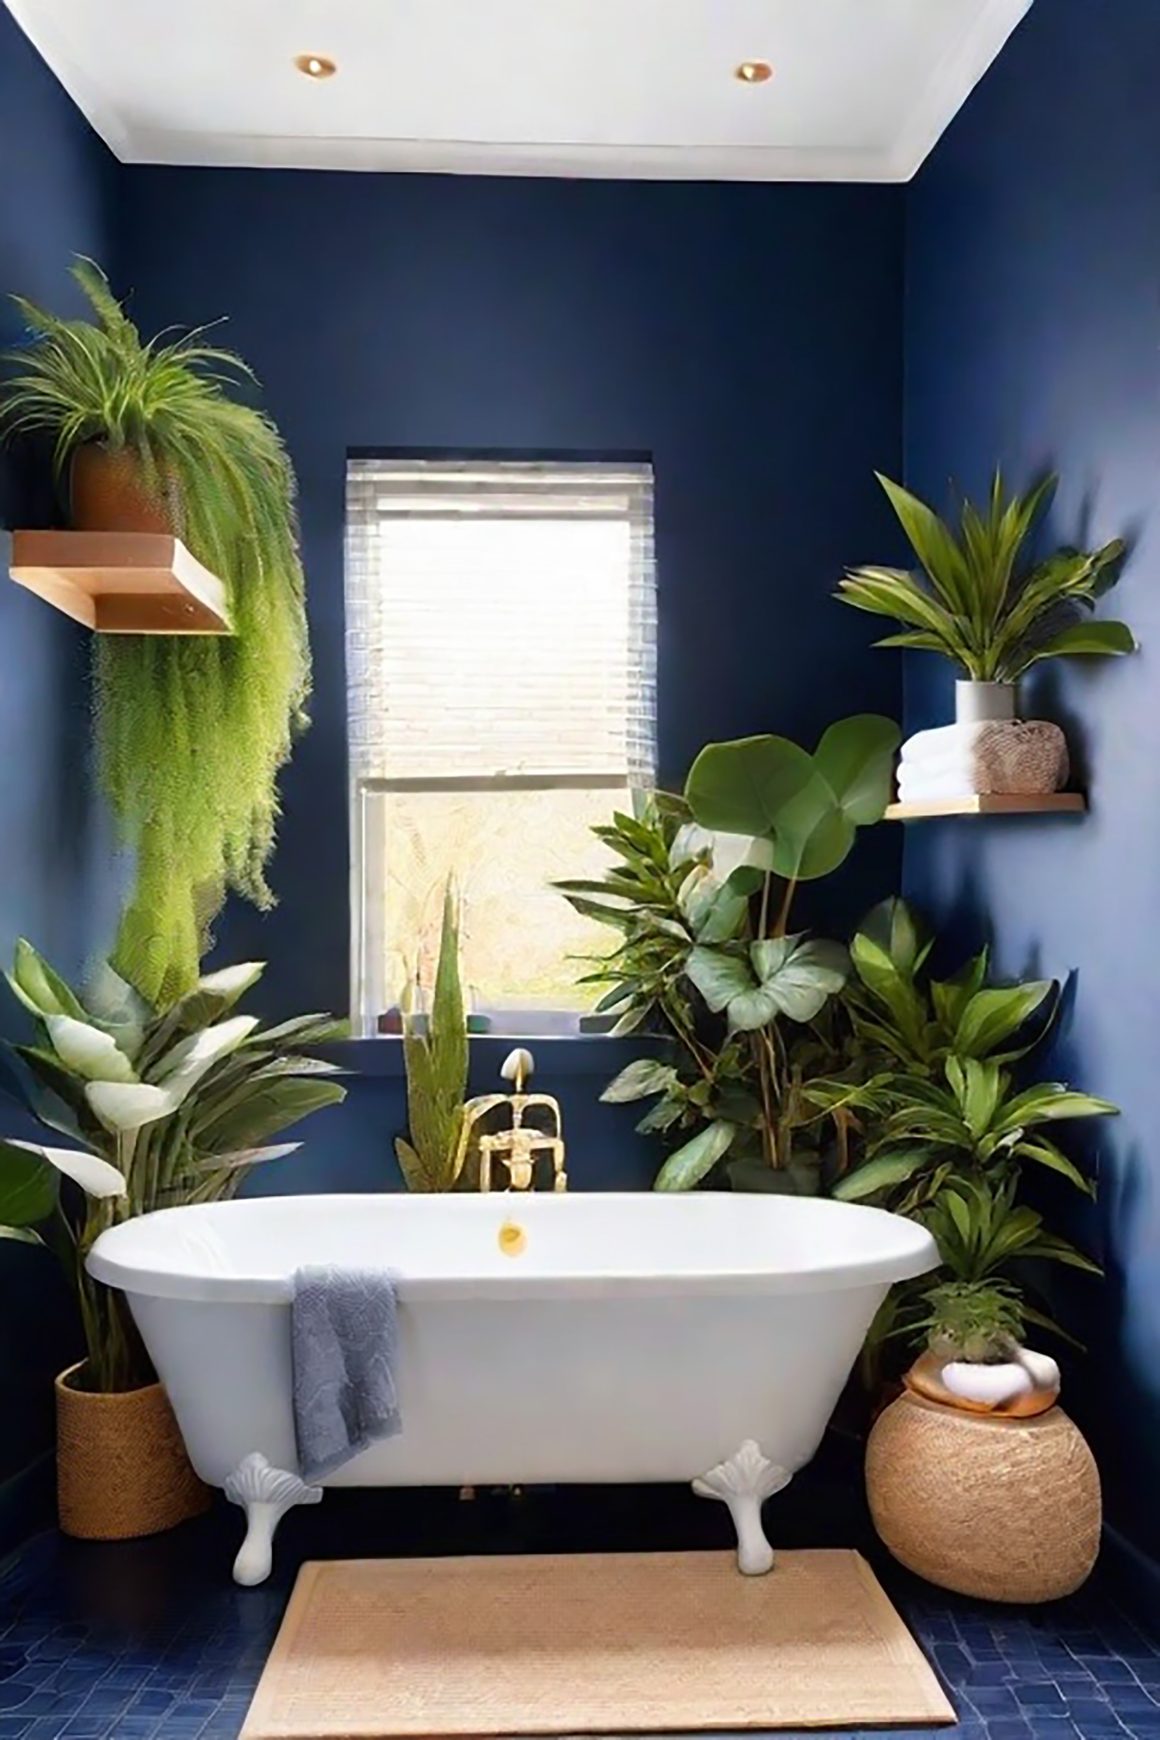 baignoire blanche avec murs bleu marine et plantes luxuriantes